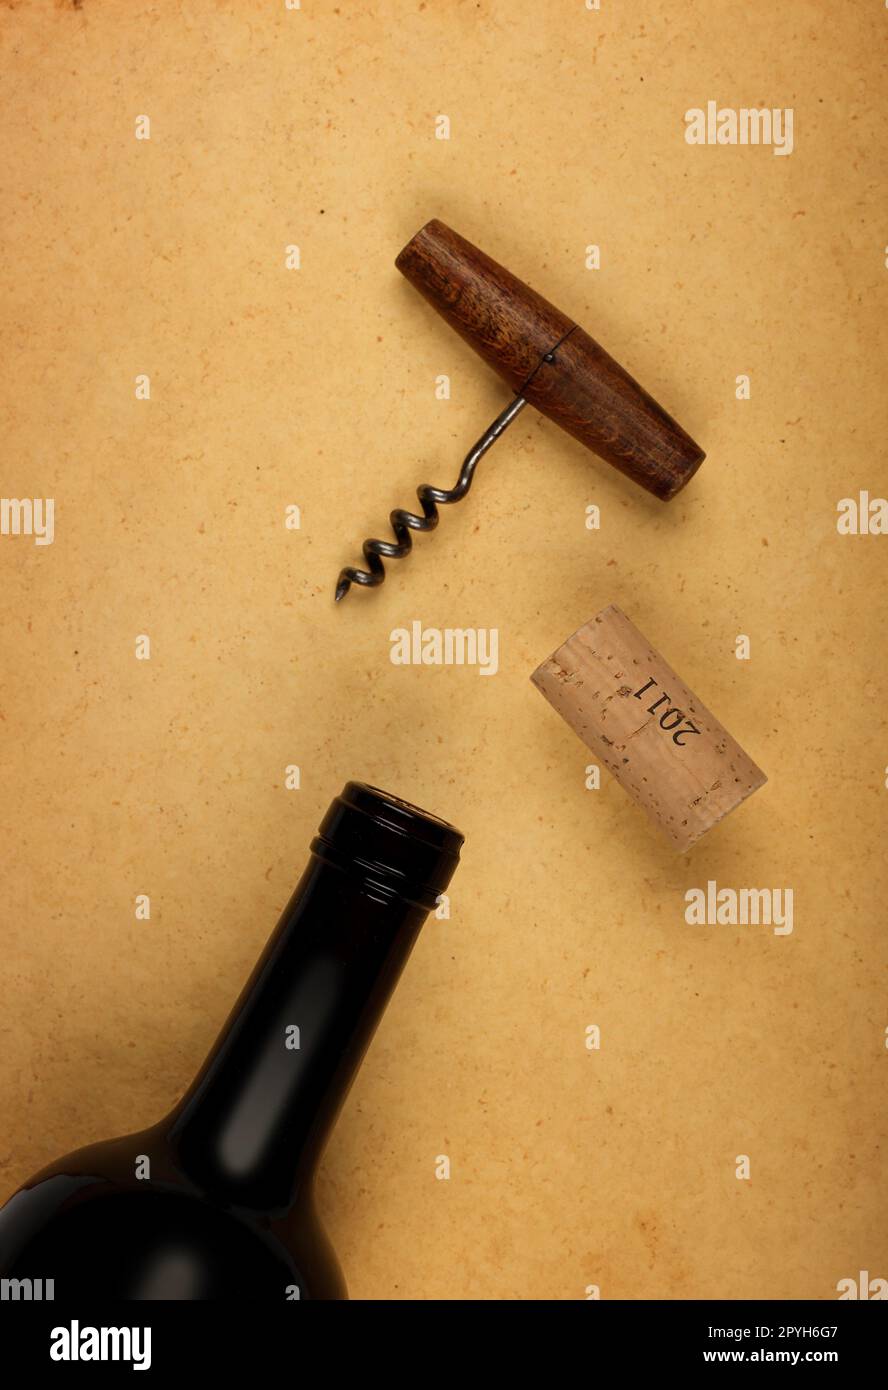 Bottiglia di vino con sughero e apribottiglie su carta marrone Foto Stock